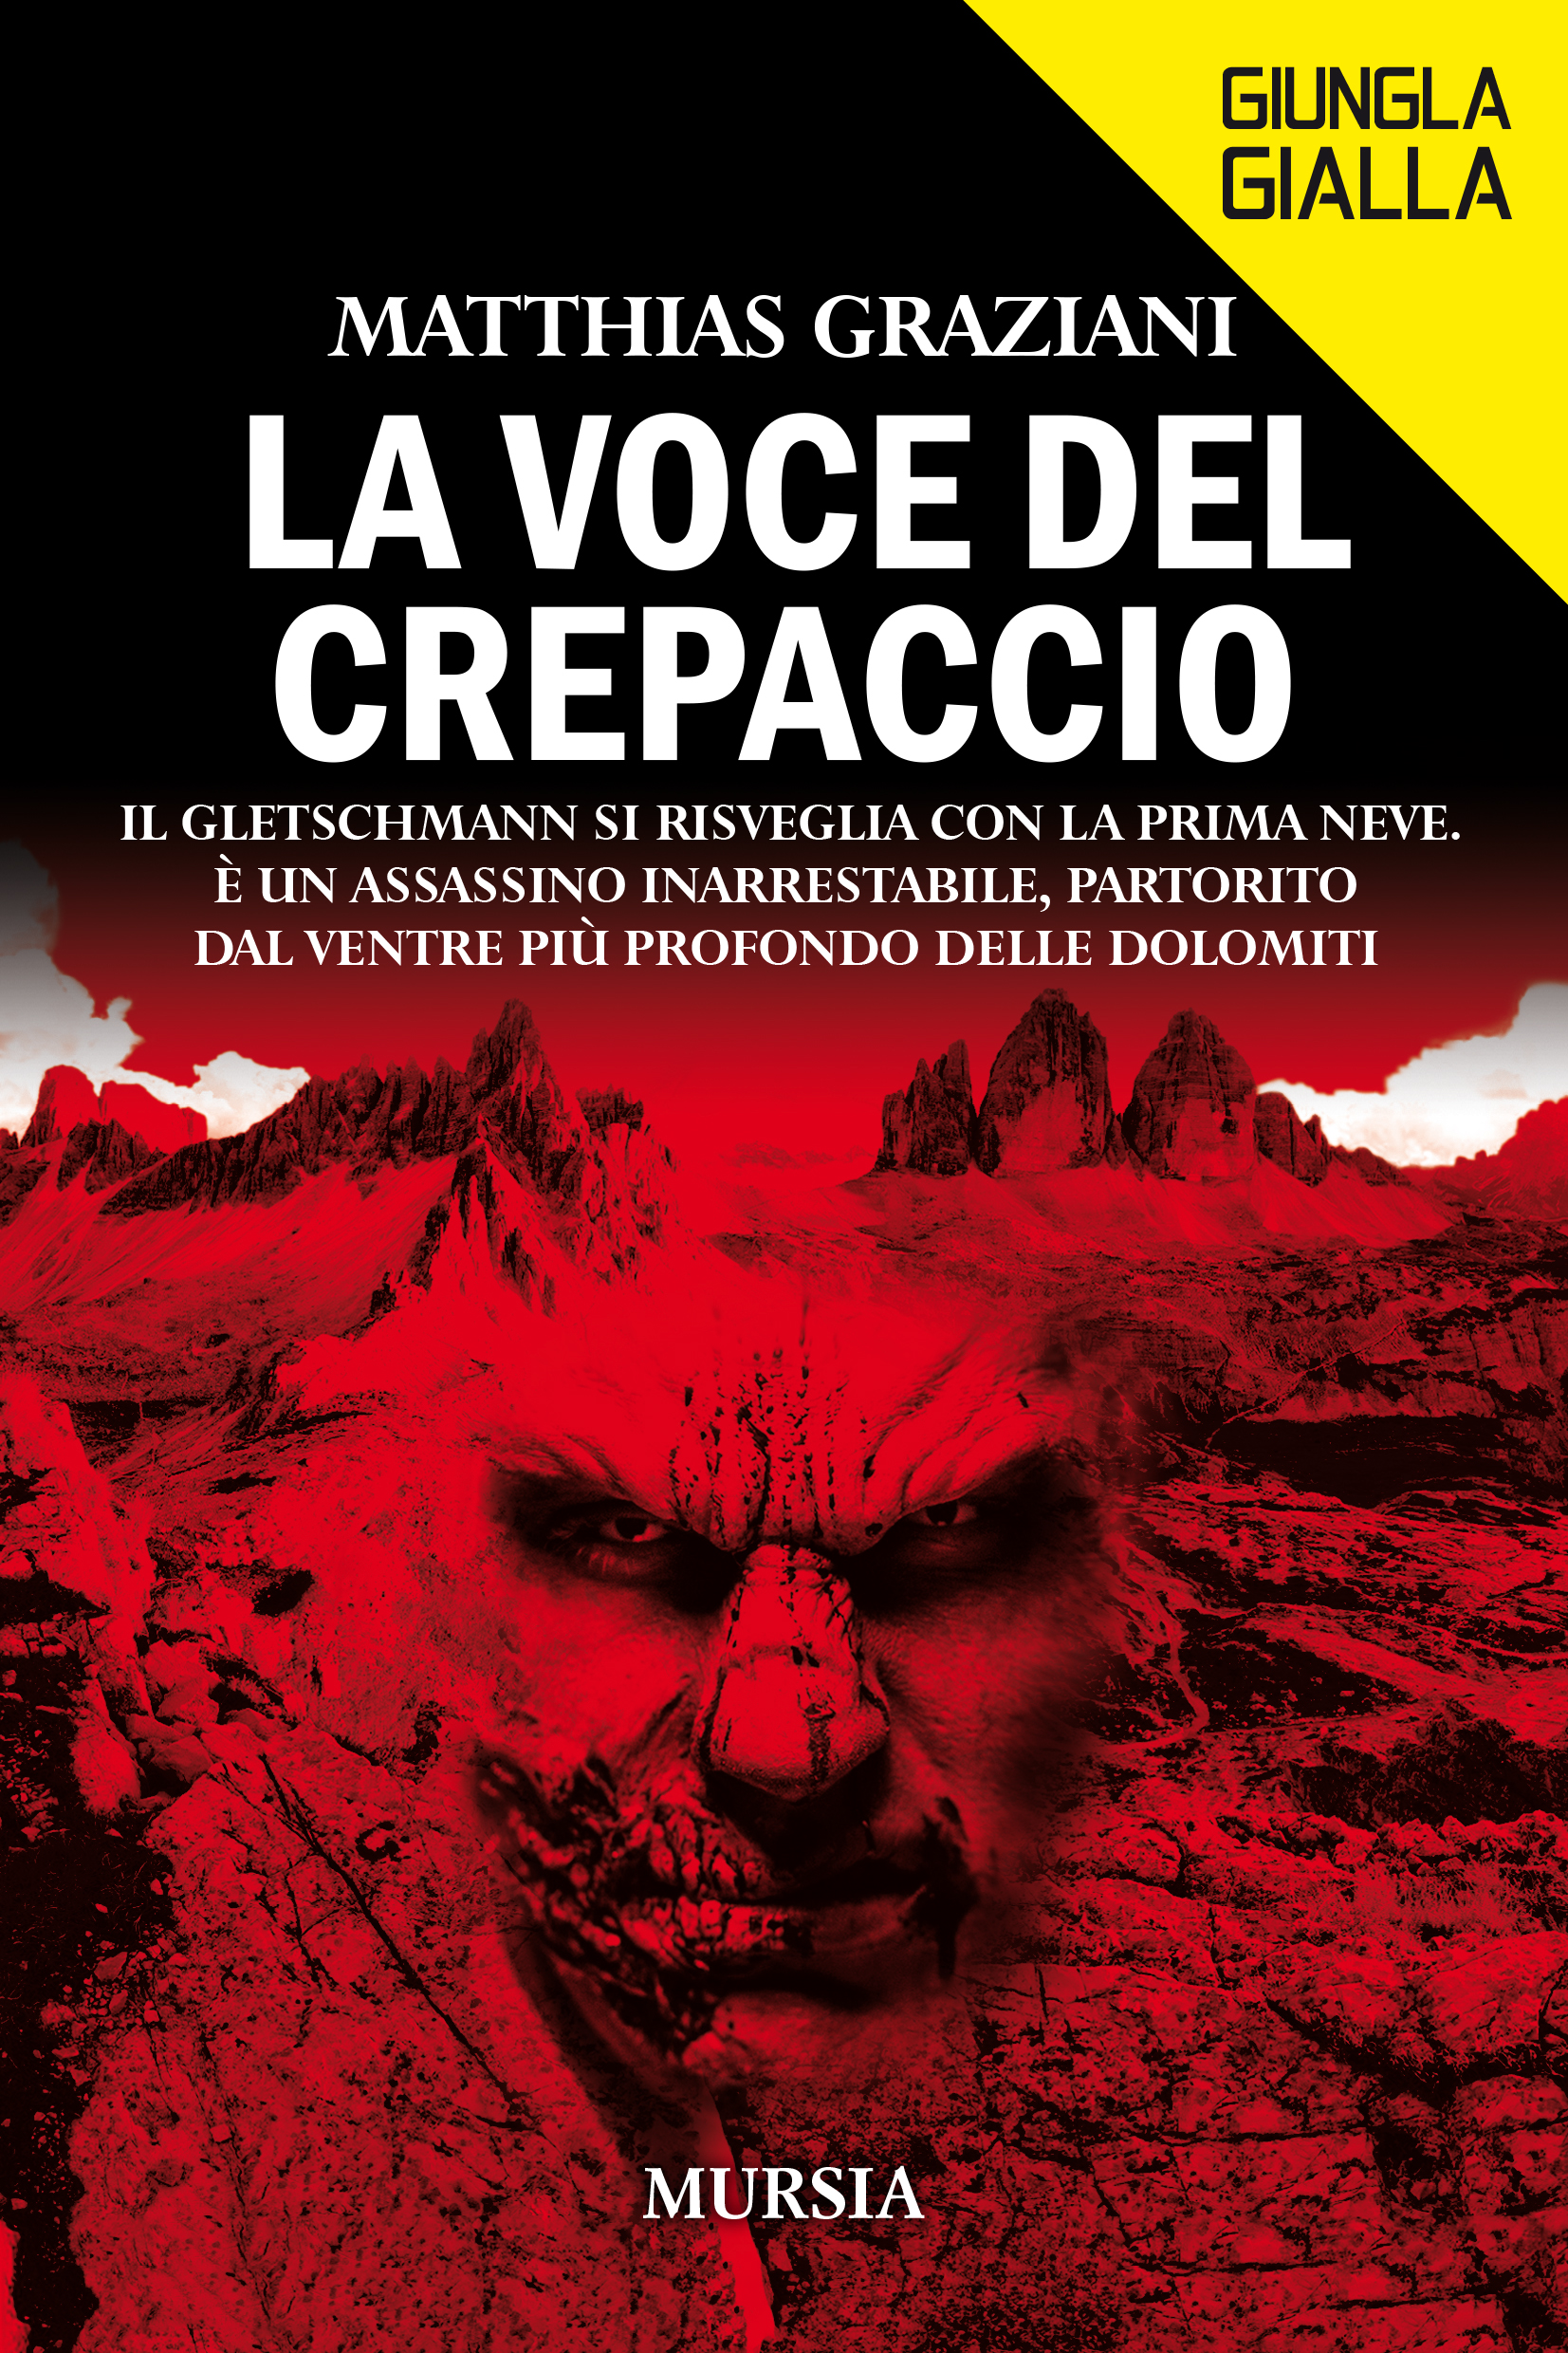 ‘La voce del crepaccio’: il thriller nordico dello scrittore altoatesino Matthias Graziani